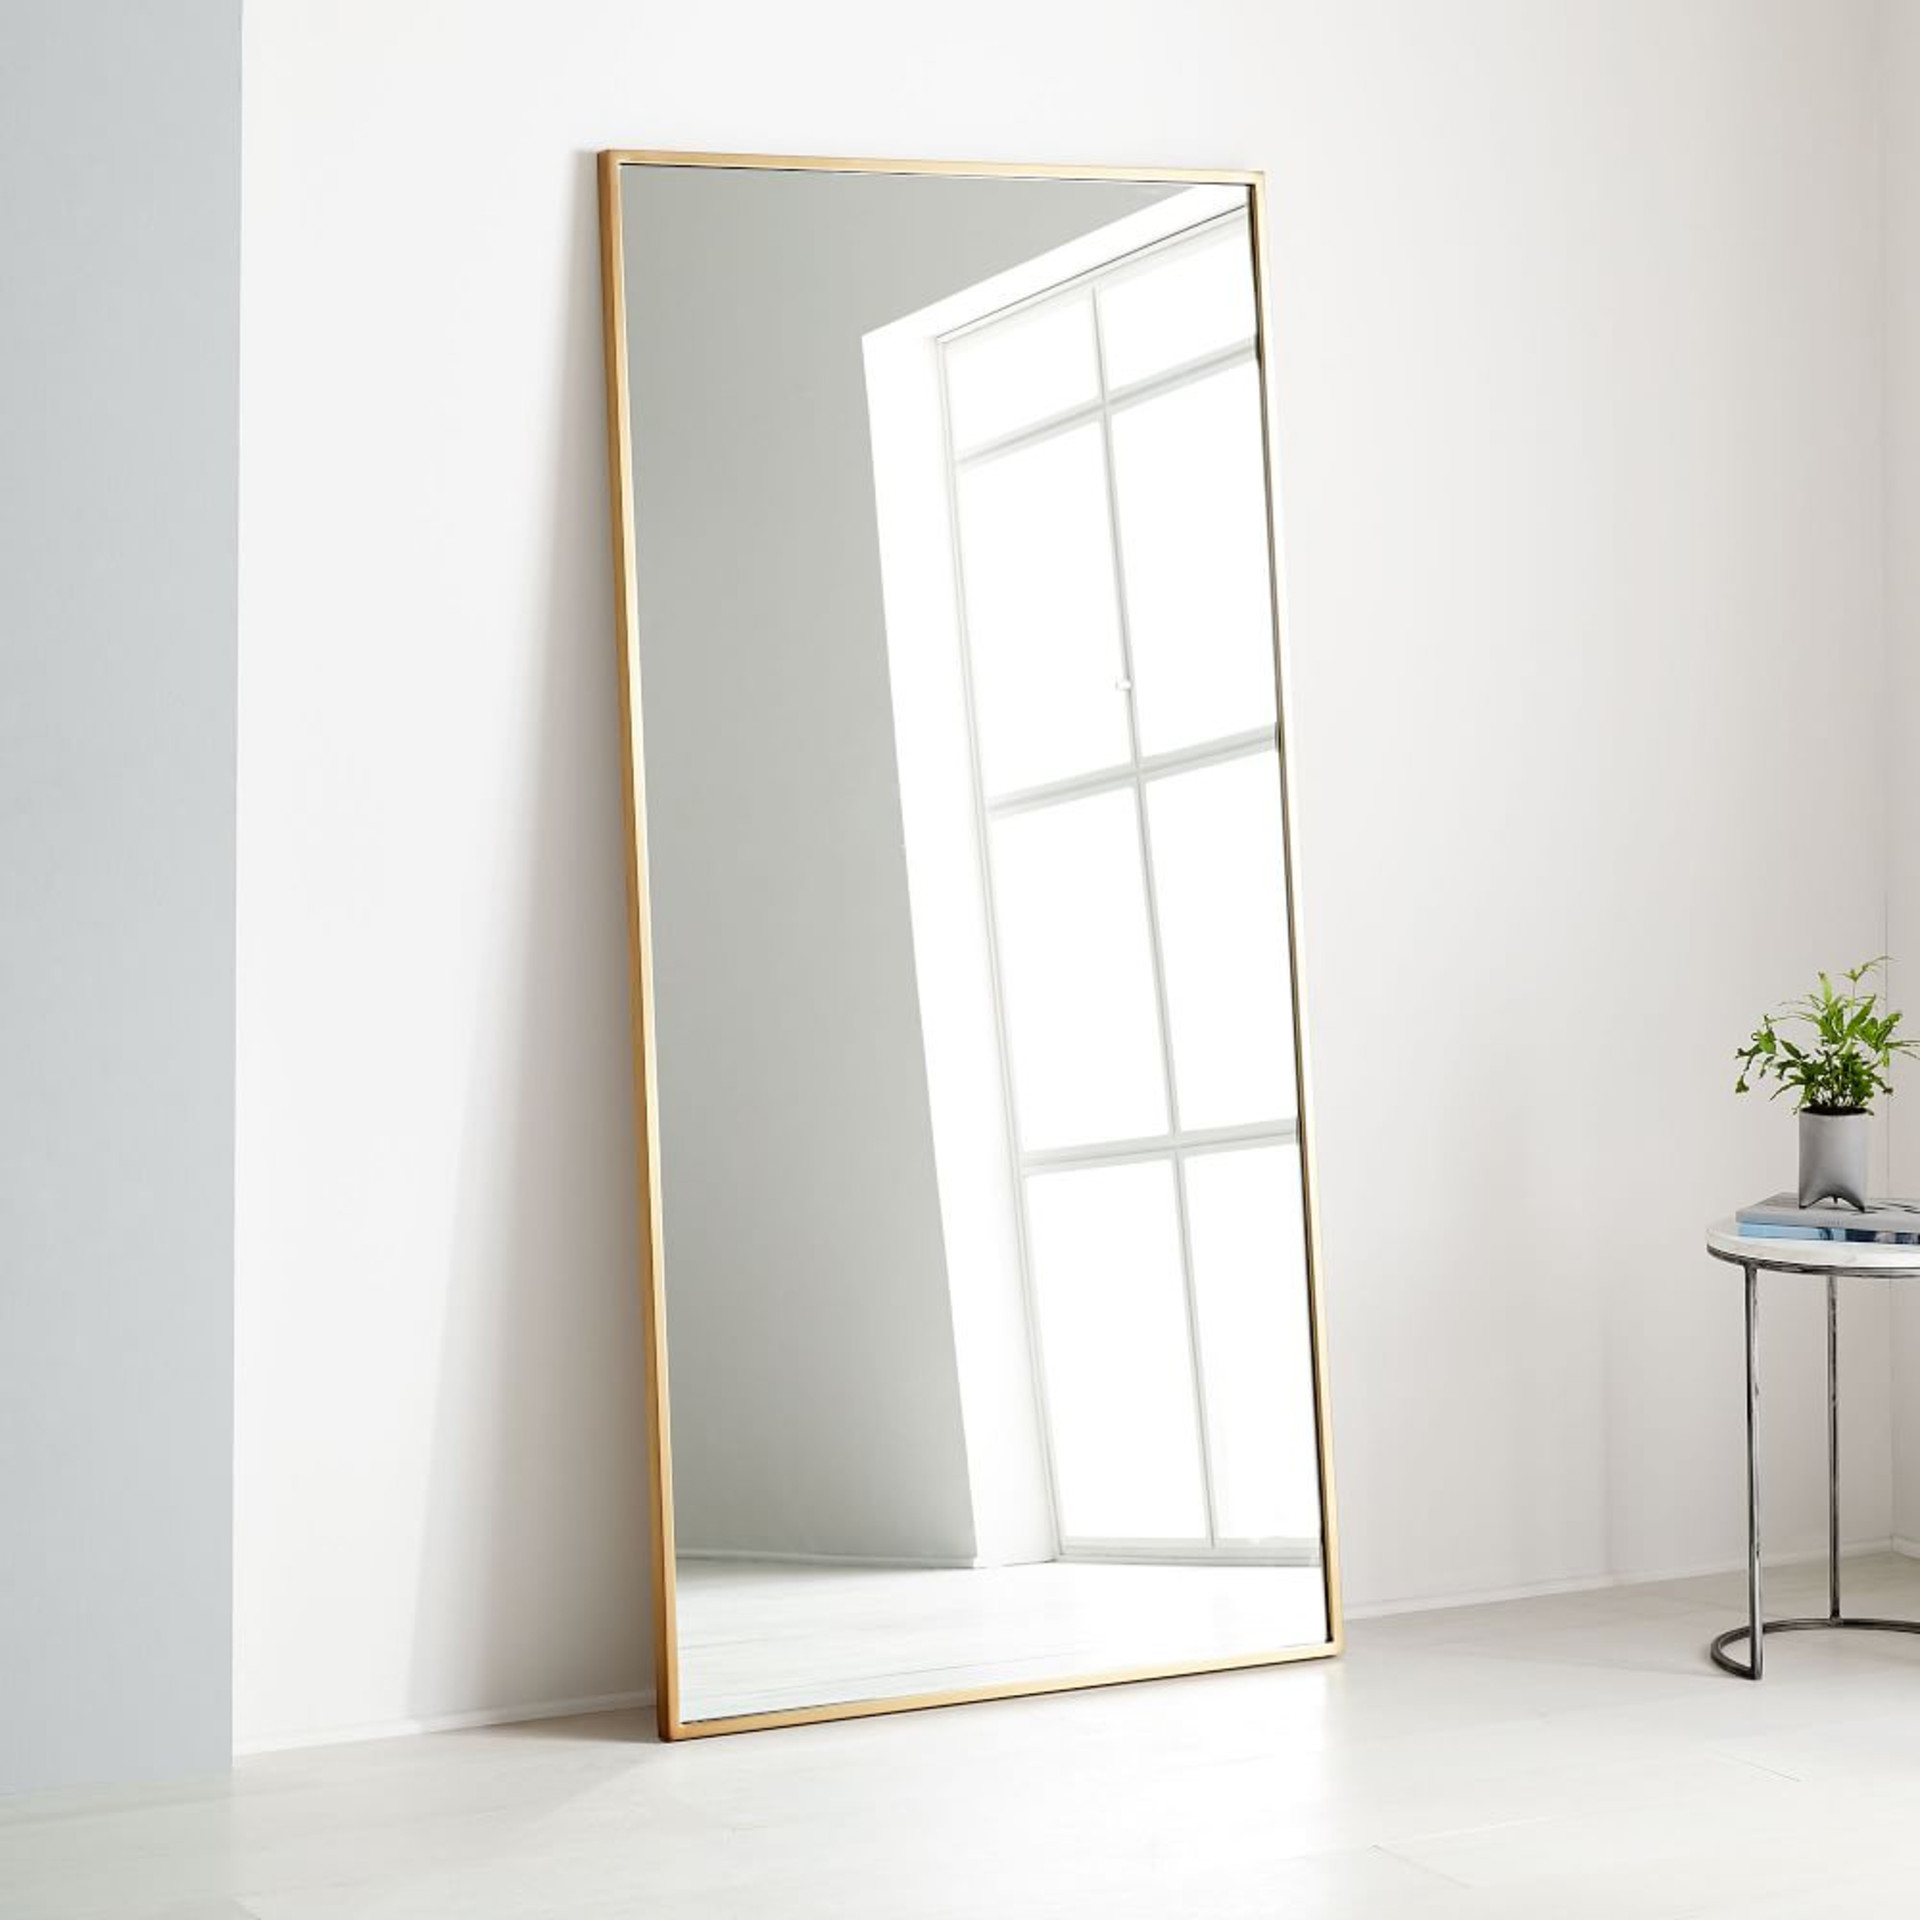 Oversized full-length mirror